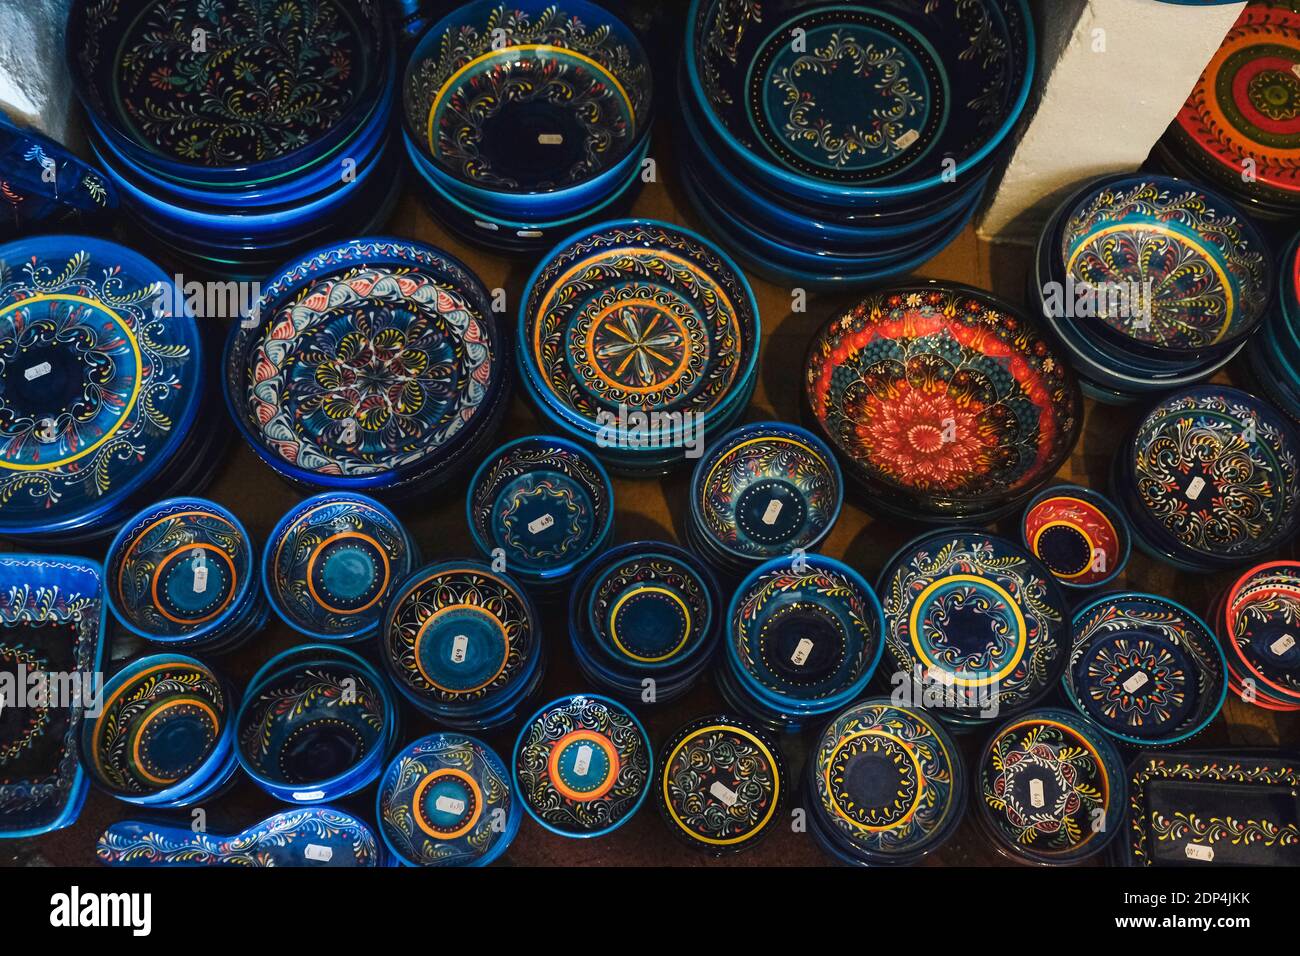 Vue en grand angle des bols en céramique mauresque du marché Banque D'Images